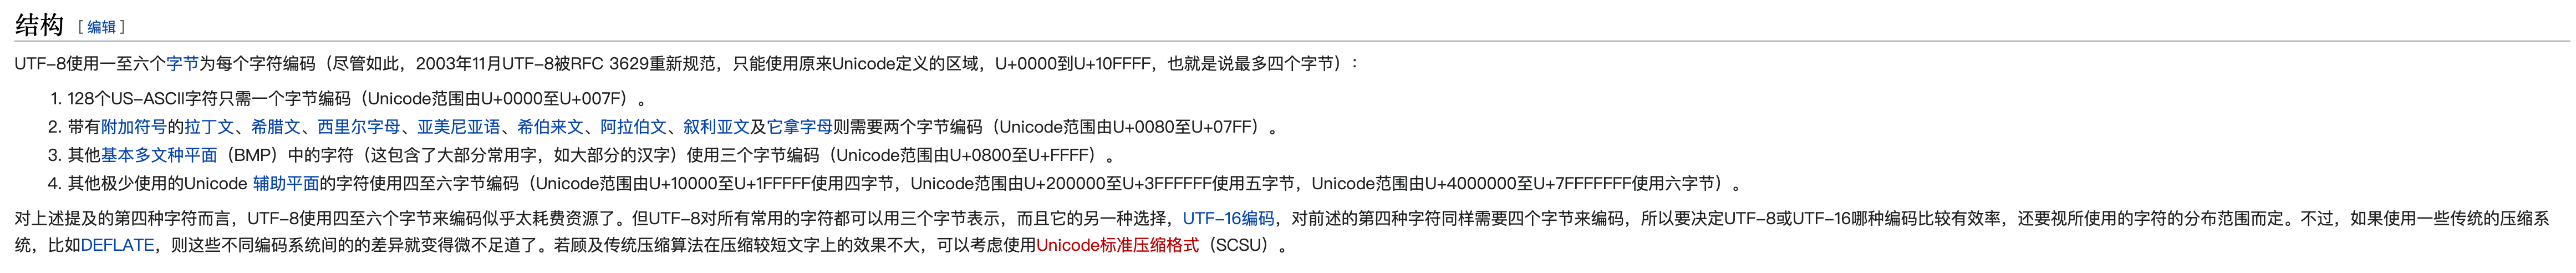 utf-8 wikipedia